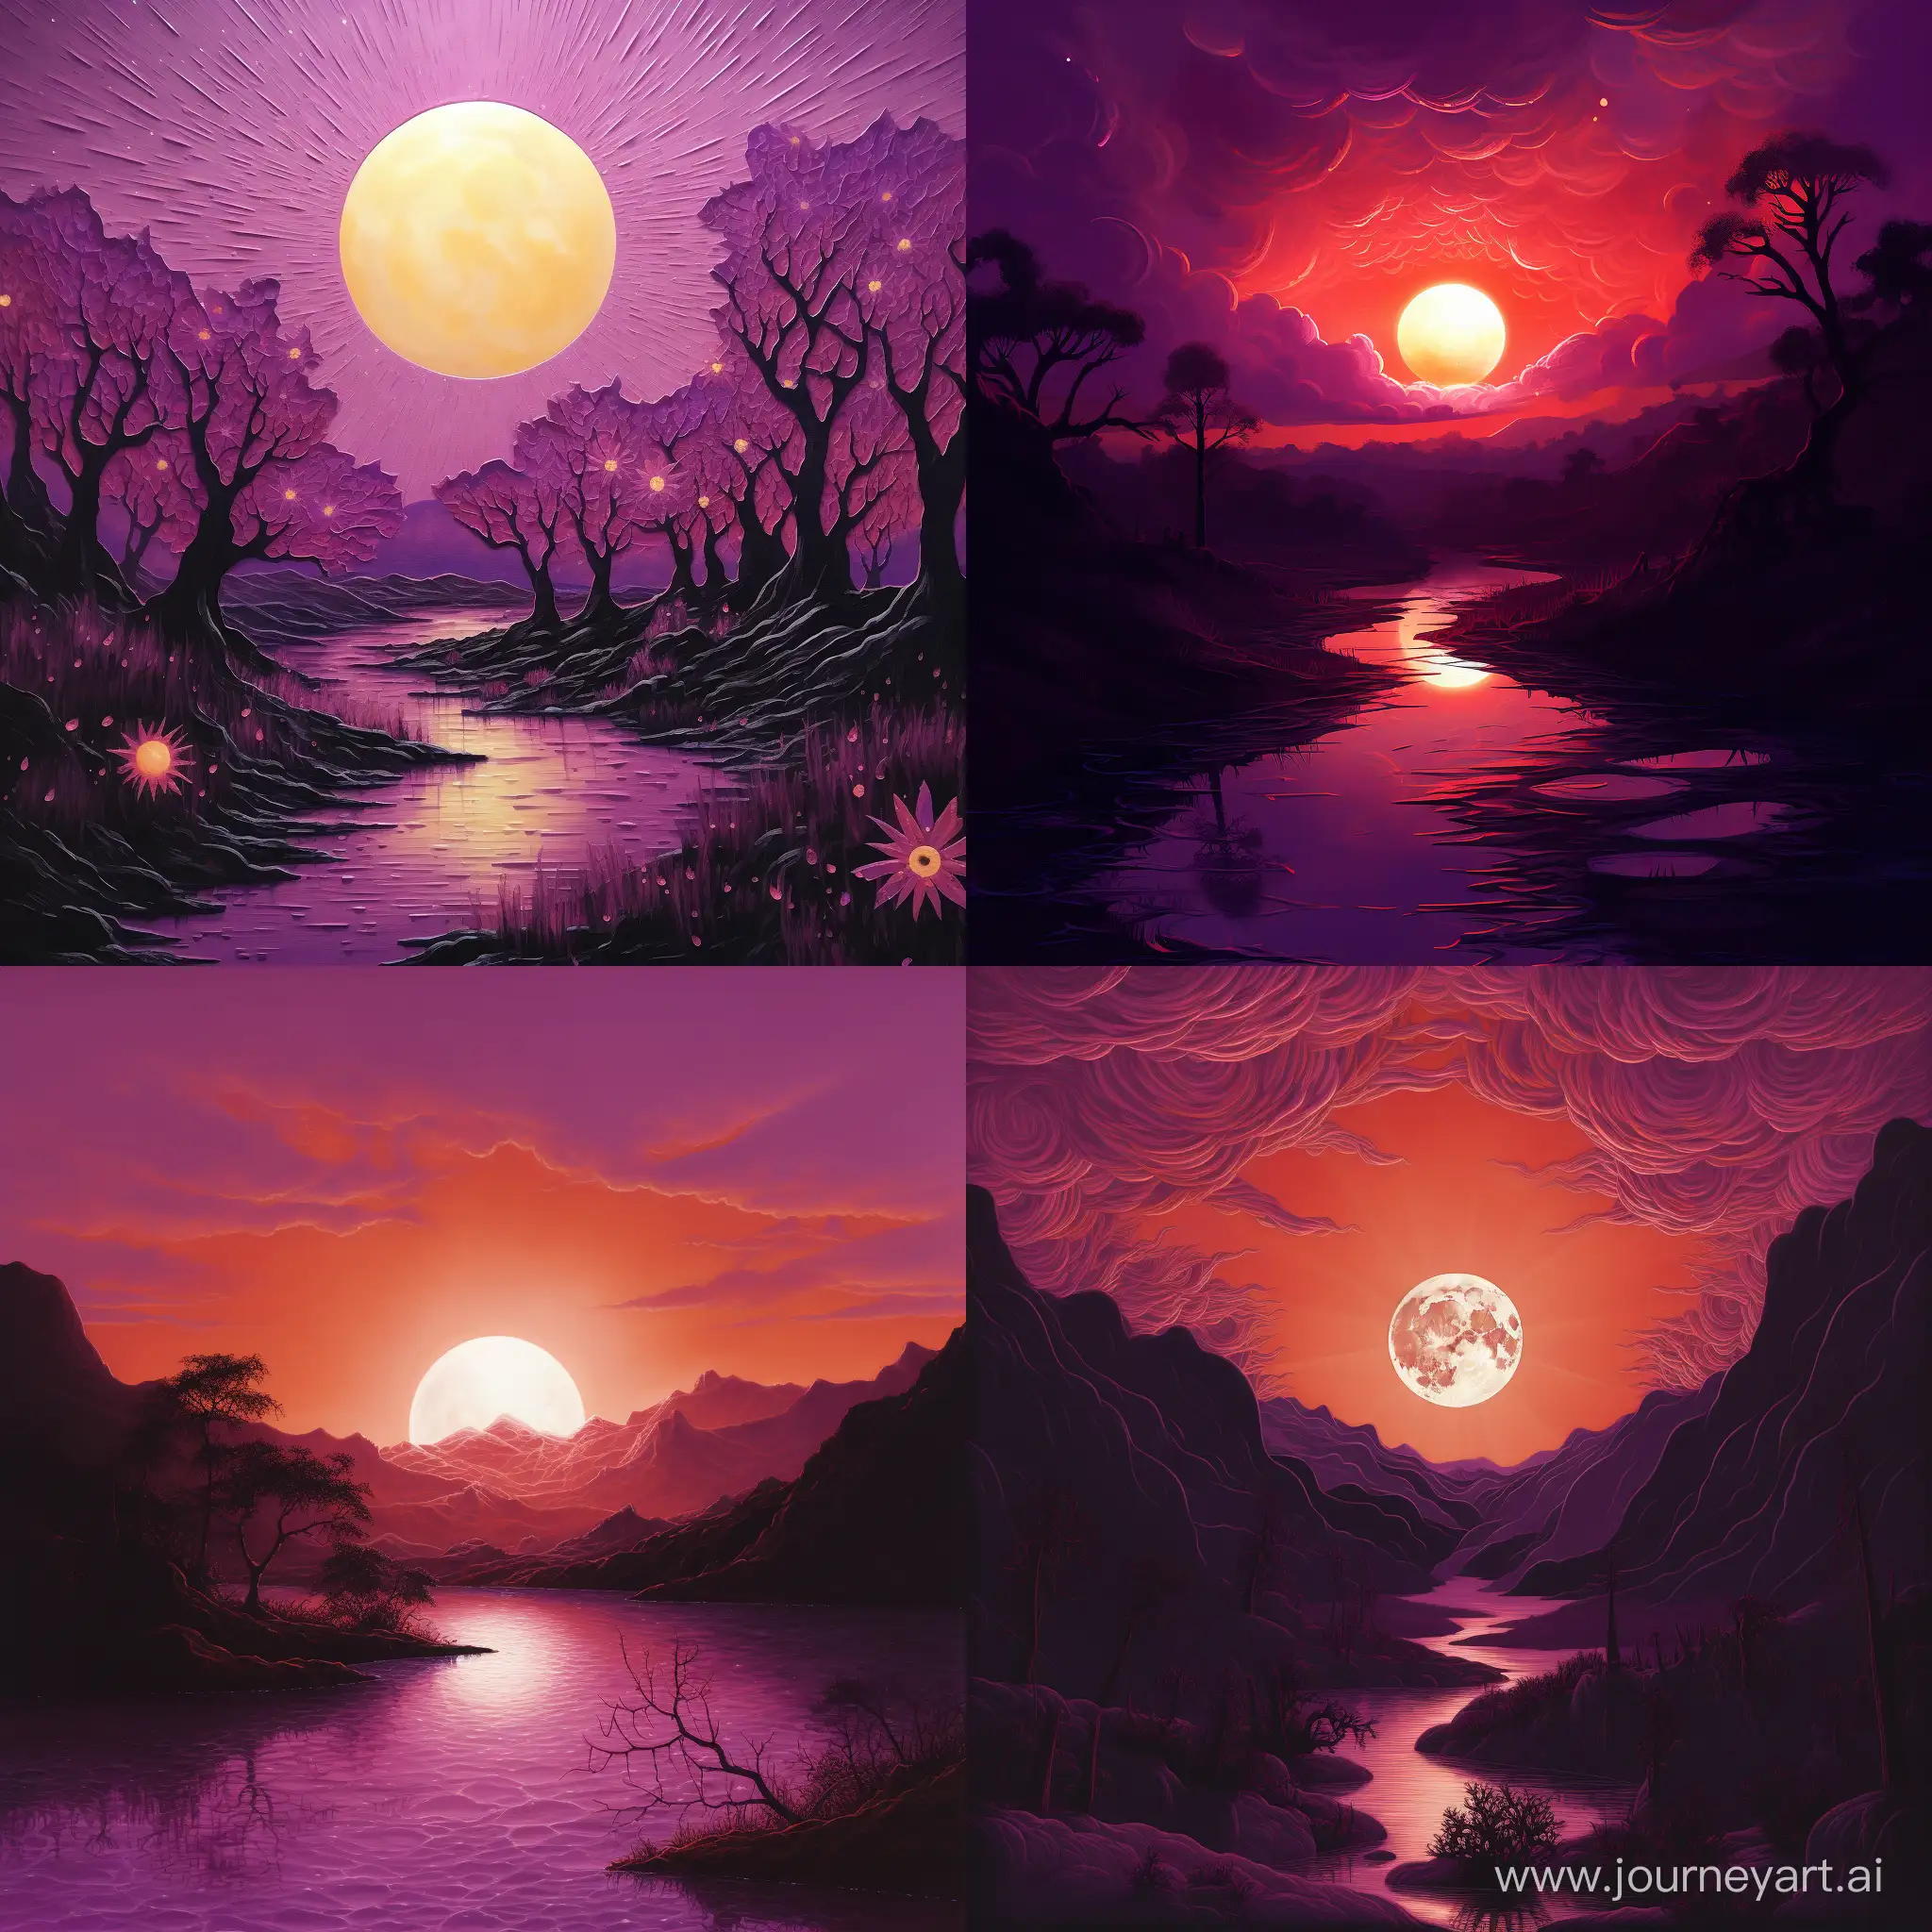 Vibrant-Purple-Sun-in-a-Surreal-Landscape